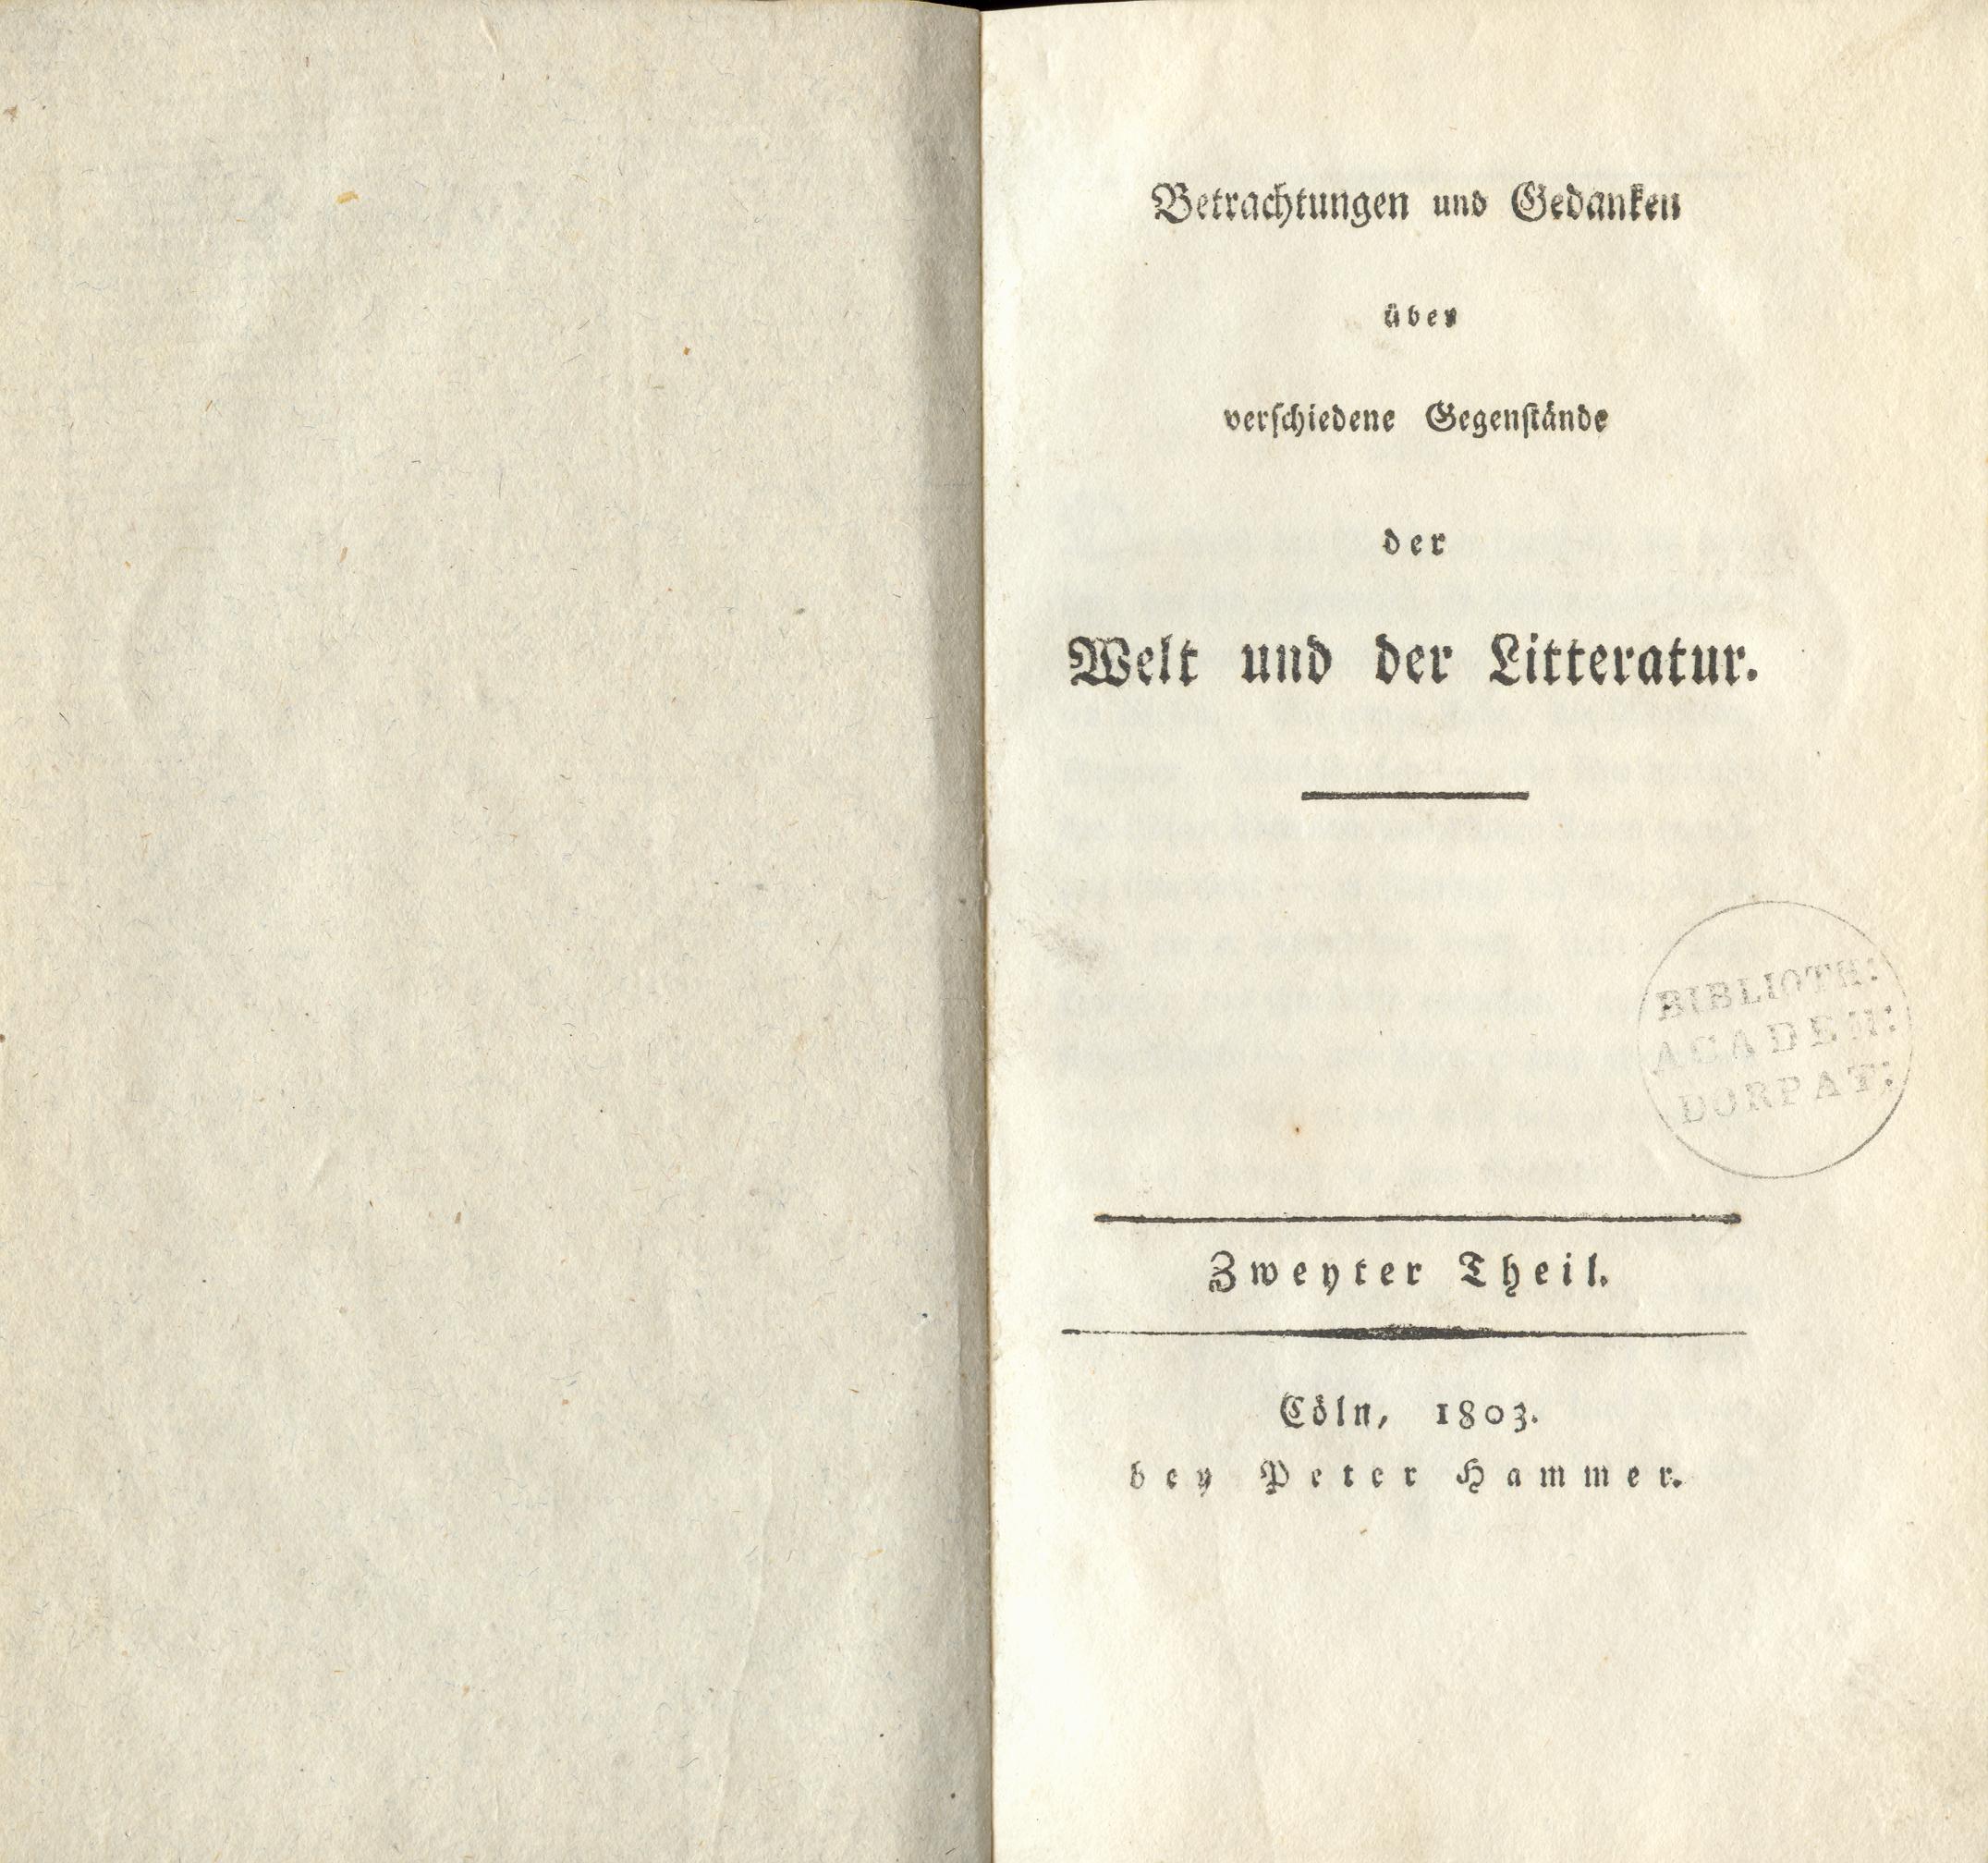 Betrachtungen und Gedanken [2] (1803) | 3. Title page